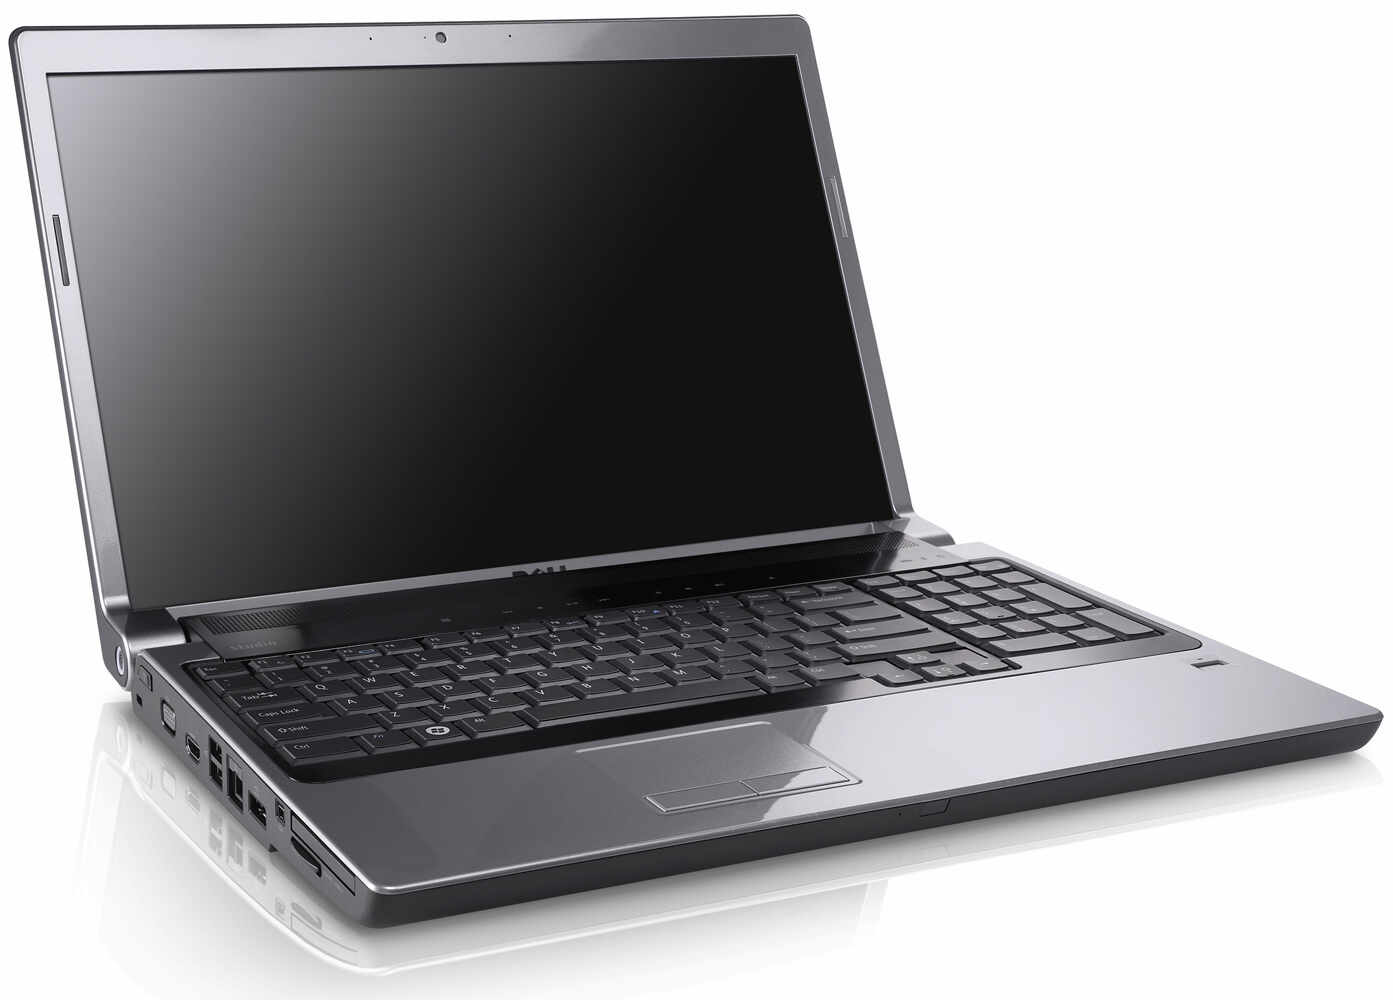 Laptop DELL Studio 1735, Intel Core 2 Duo T8300 2.40GHz, 4GB DDR2, 160GB SATA, DVD-RW, 17 Inch, Webcam, Tastatura Numerica, Baterie Consumata